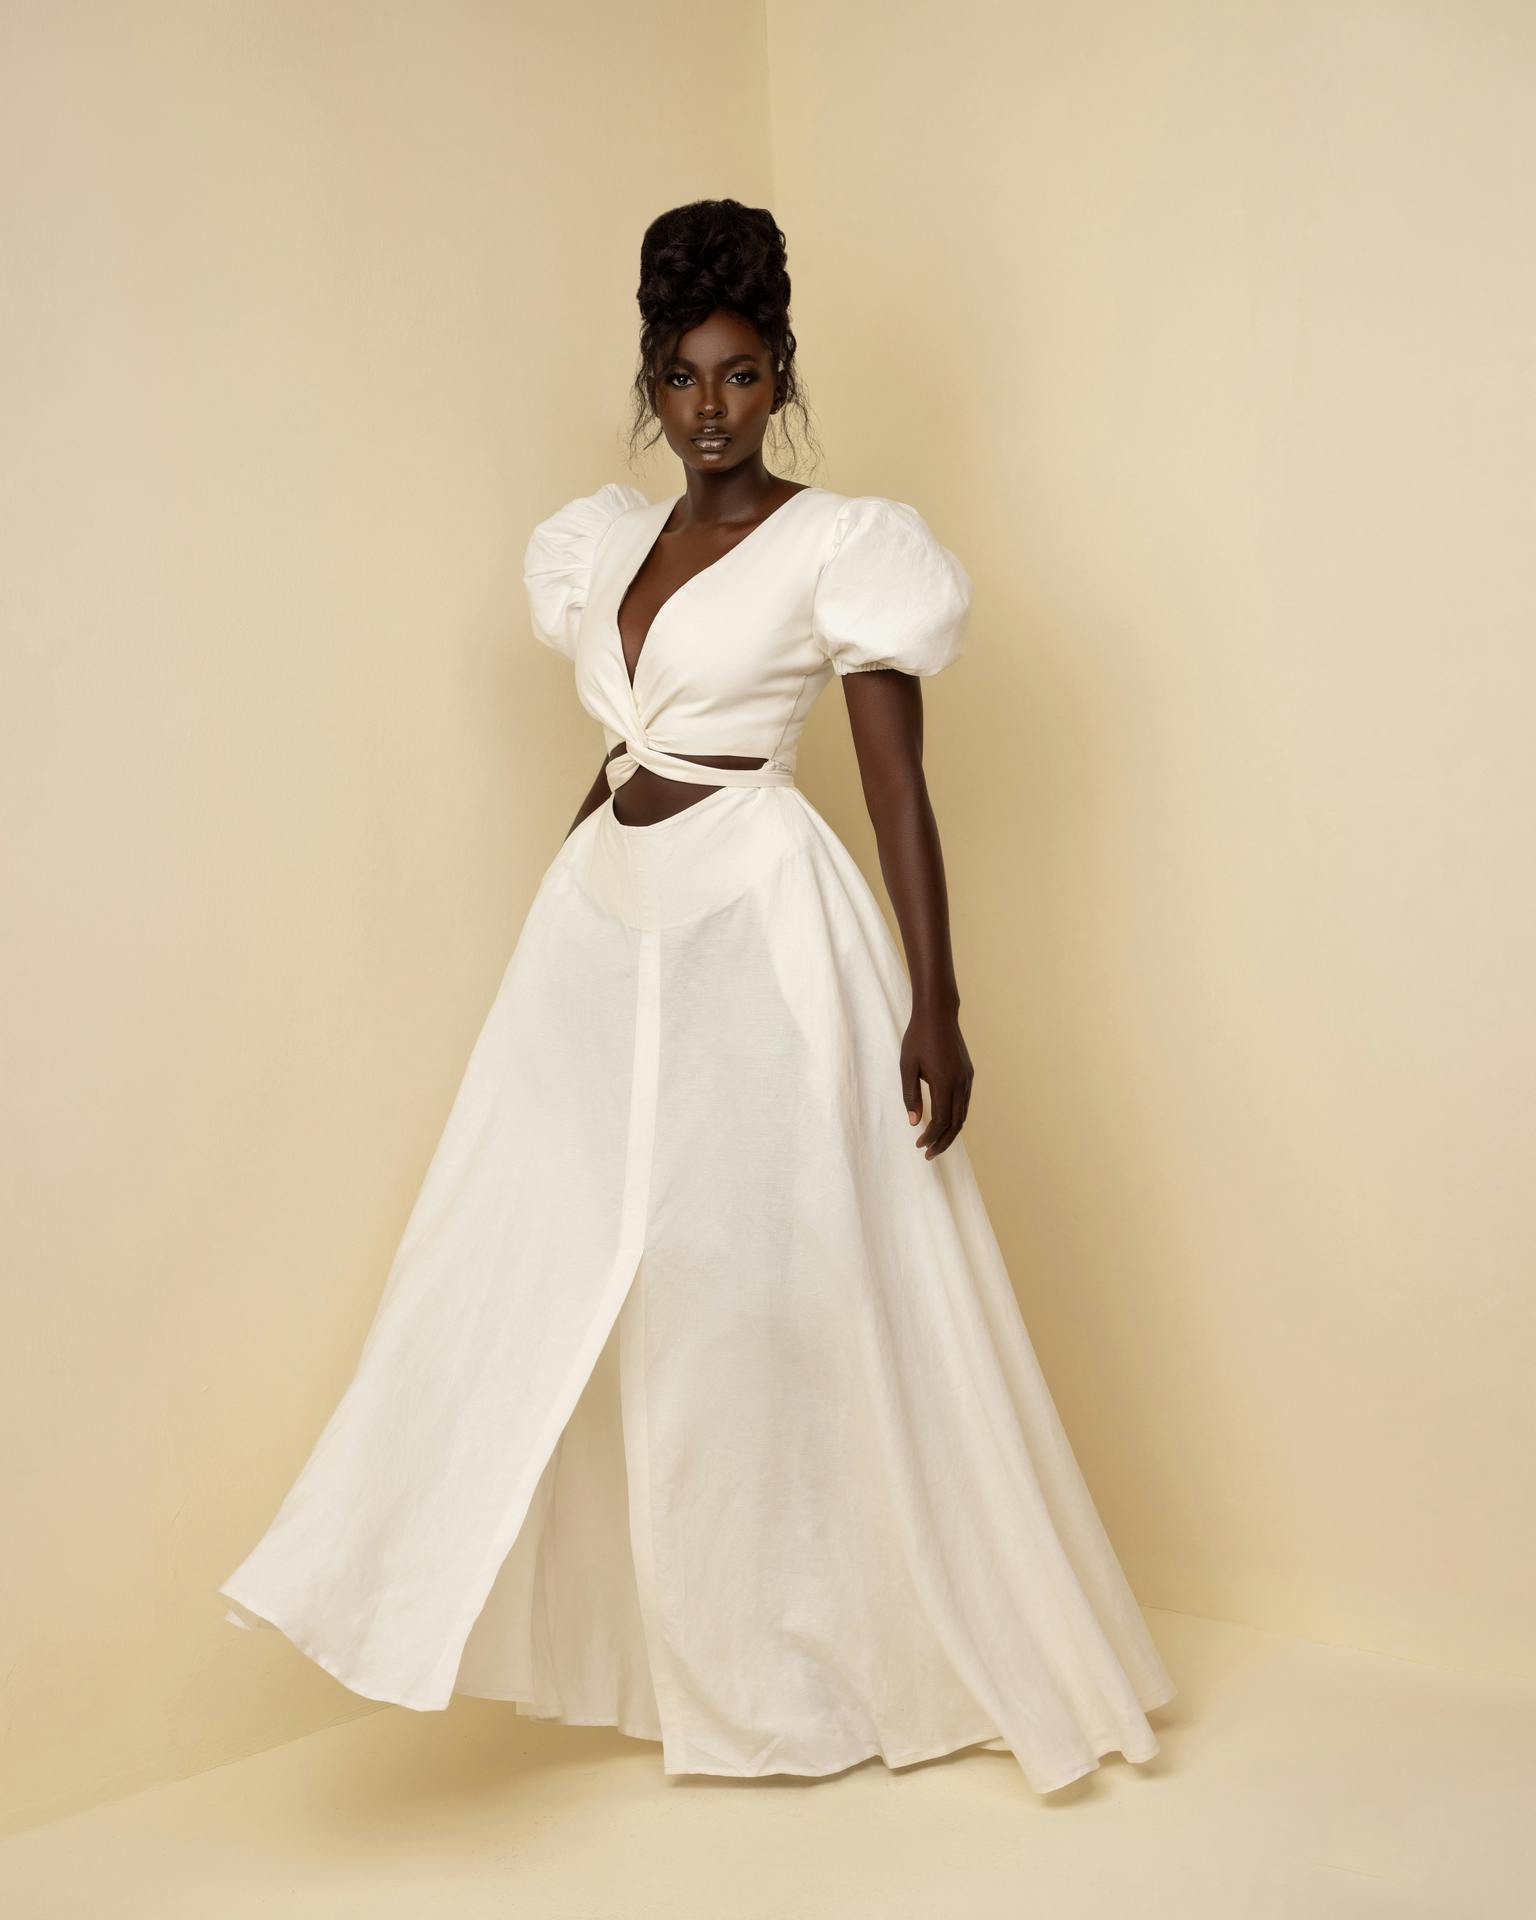 Daya Dress, a product by Knanfe Fashion